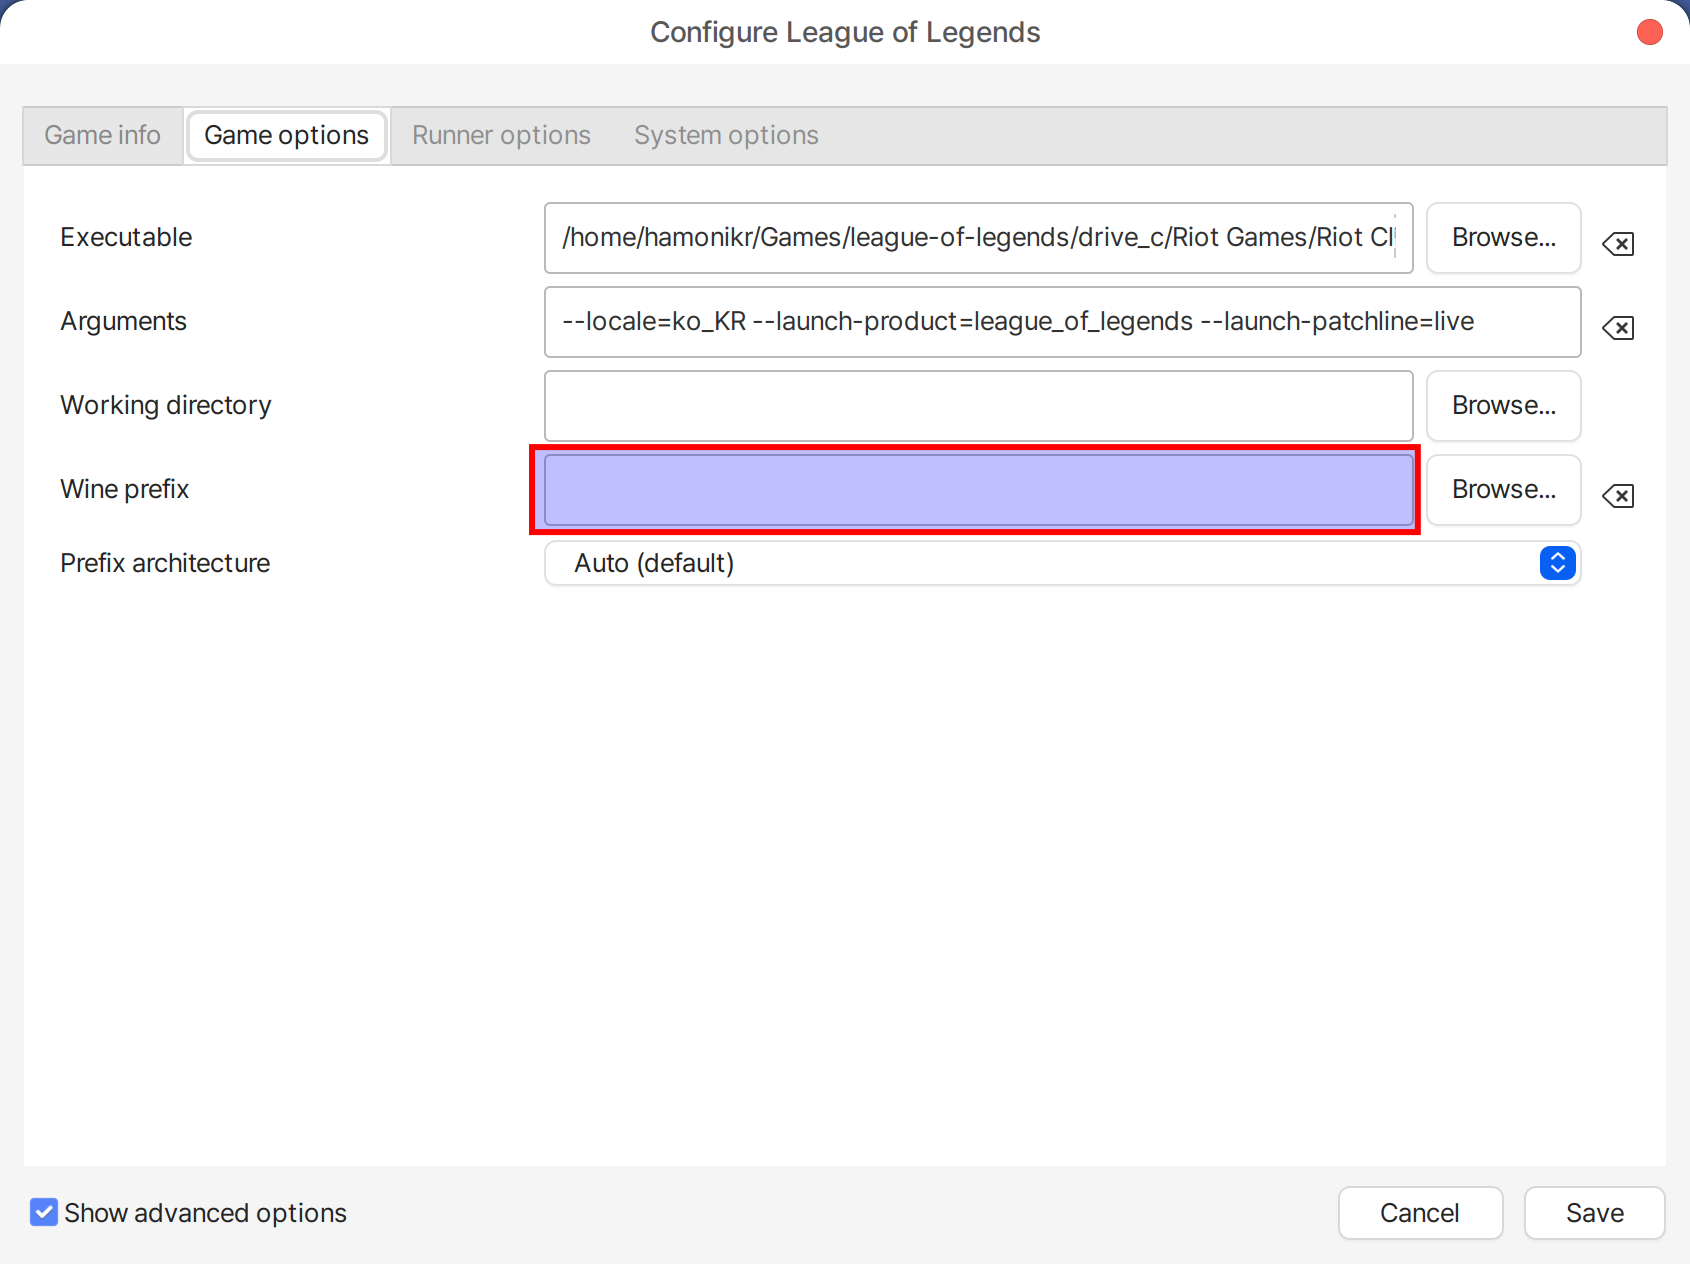 Configure League of Legends_001.png